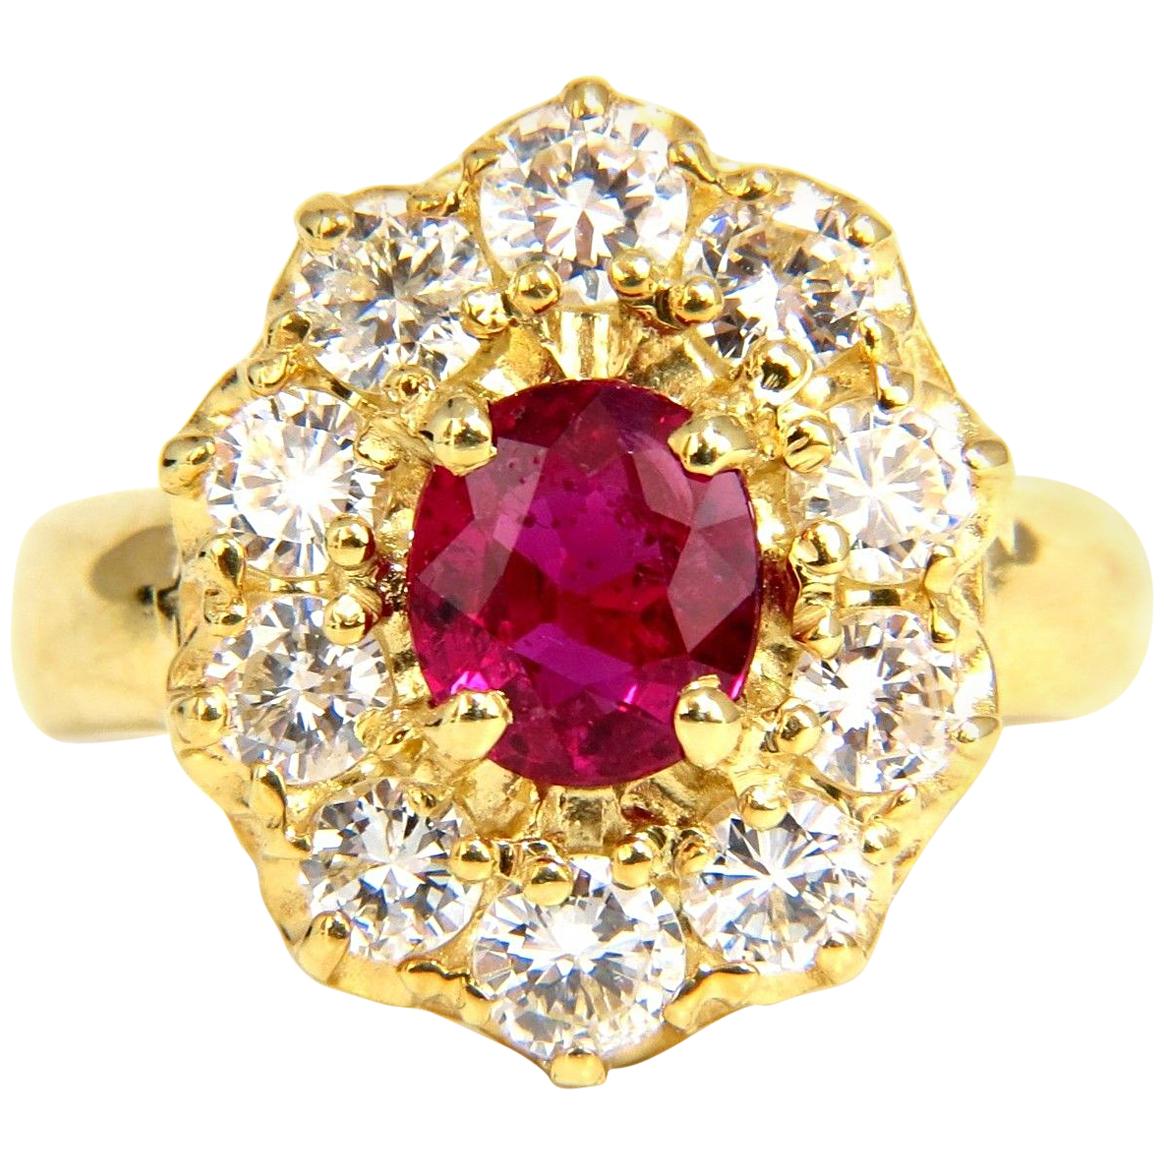 Bague en grappe de diamants non chauffés 18 carats avec rubis rouge naturel non chauffé de 2,30 carats, certifié GIA